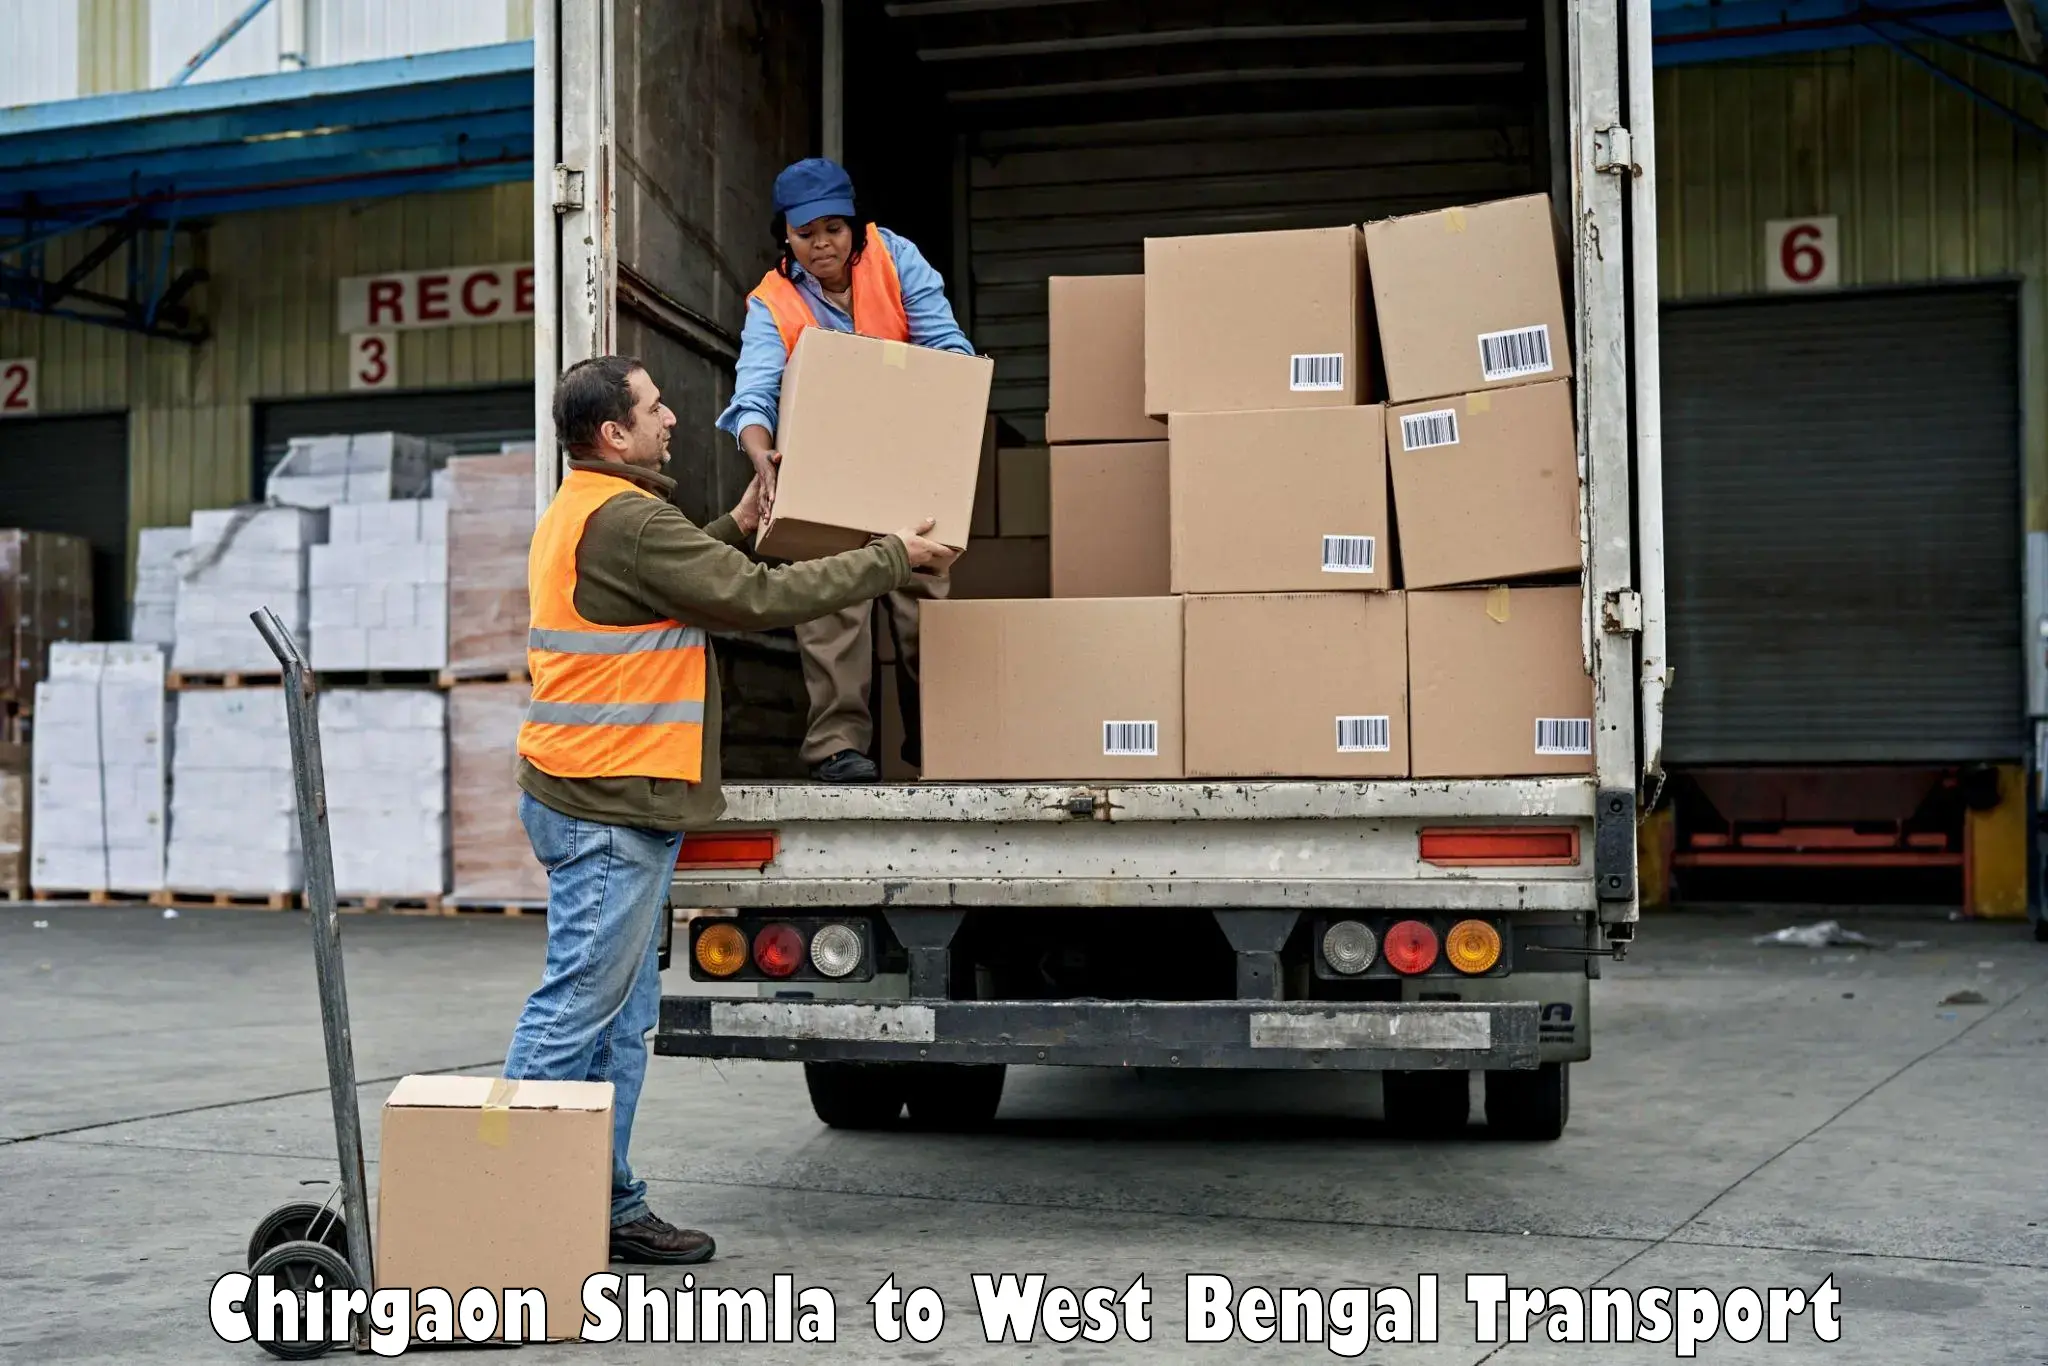 Furniture transport service Chirgaon Shimla to Balurghat